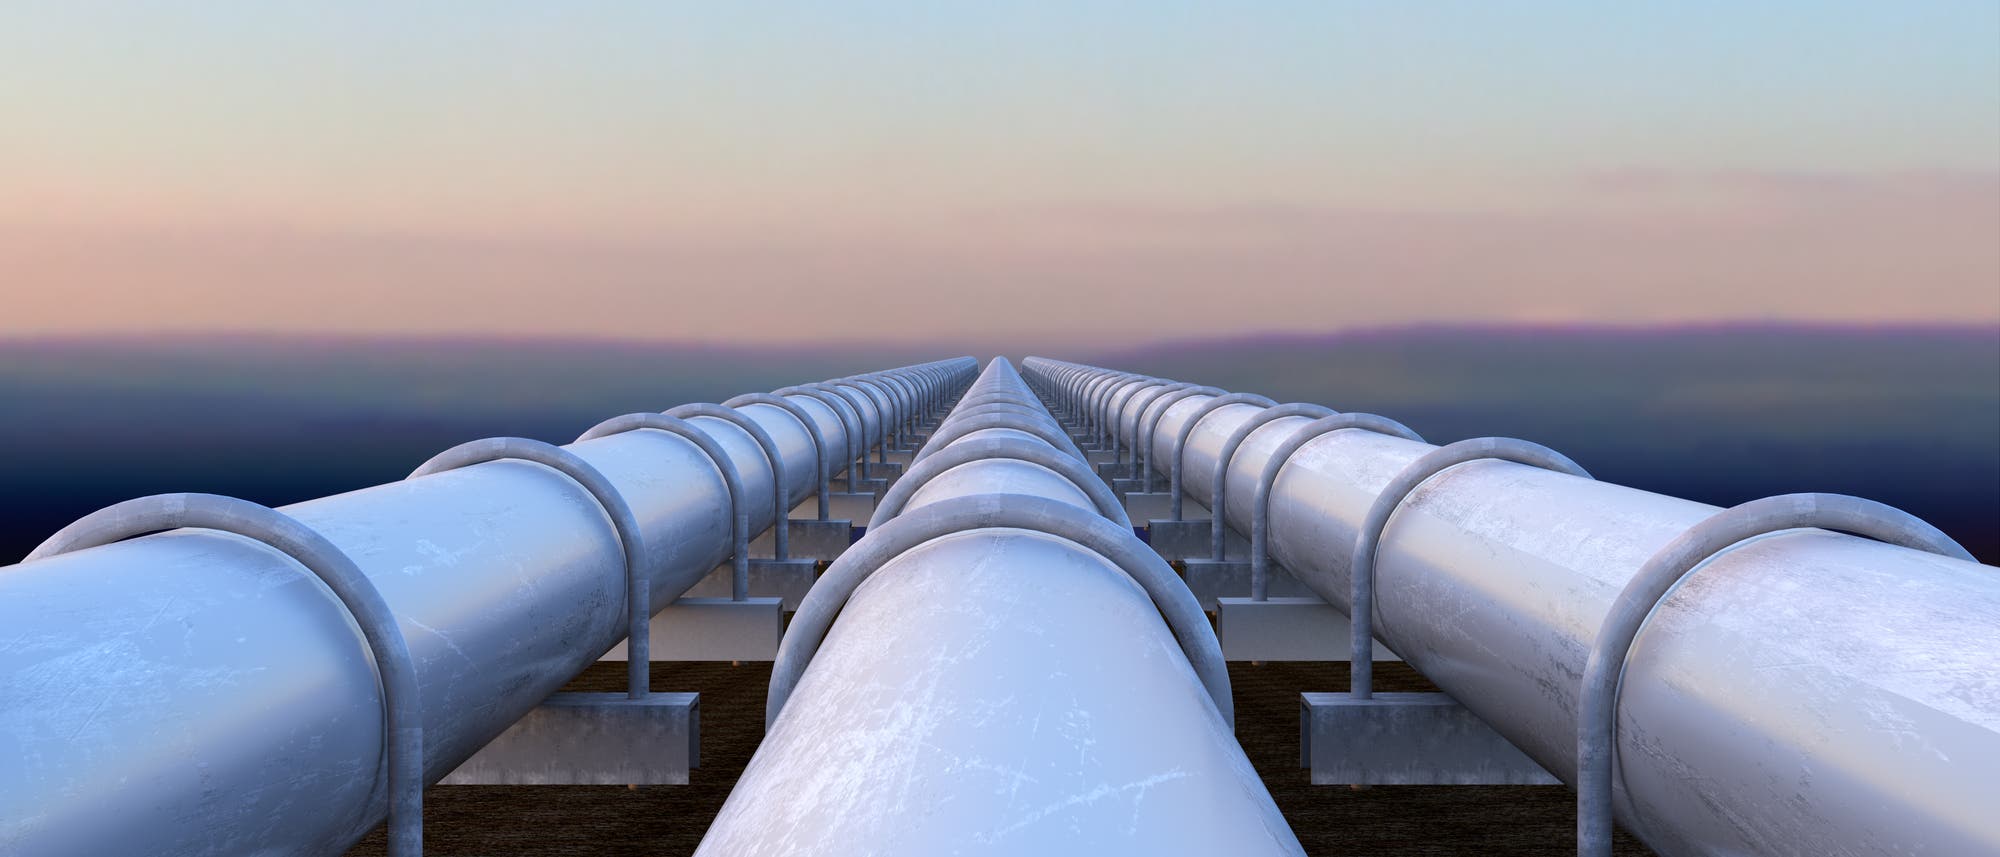 Um das ganze Kohlendioxid in die Erde zu pumpen, benötigt man viele Pipelines